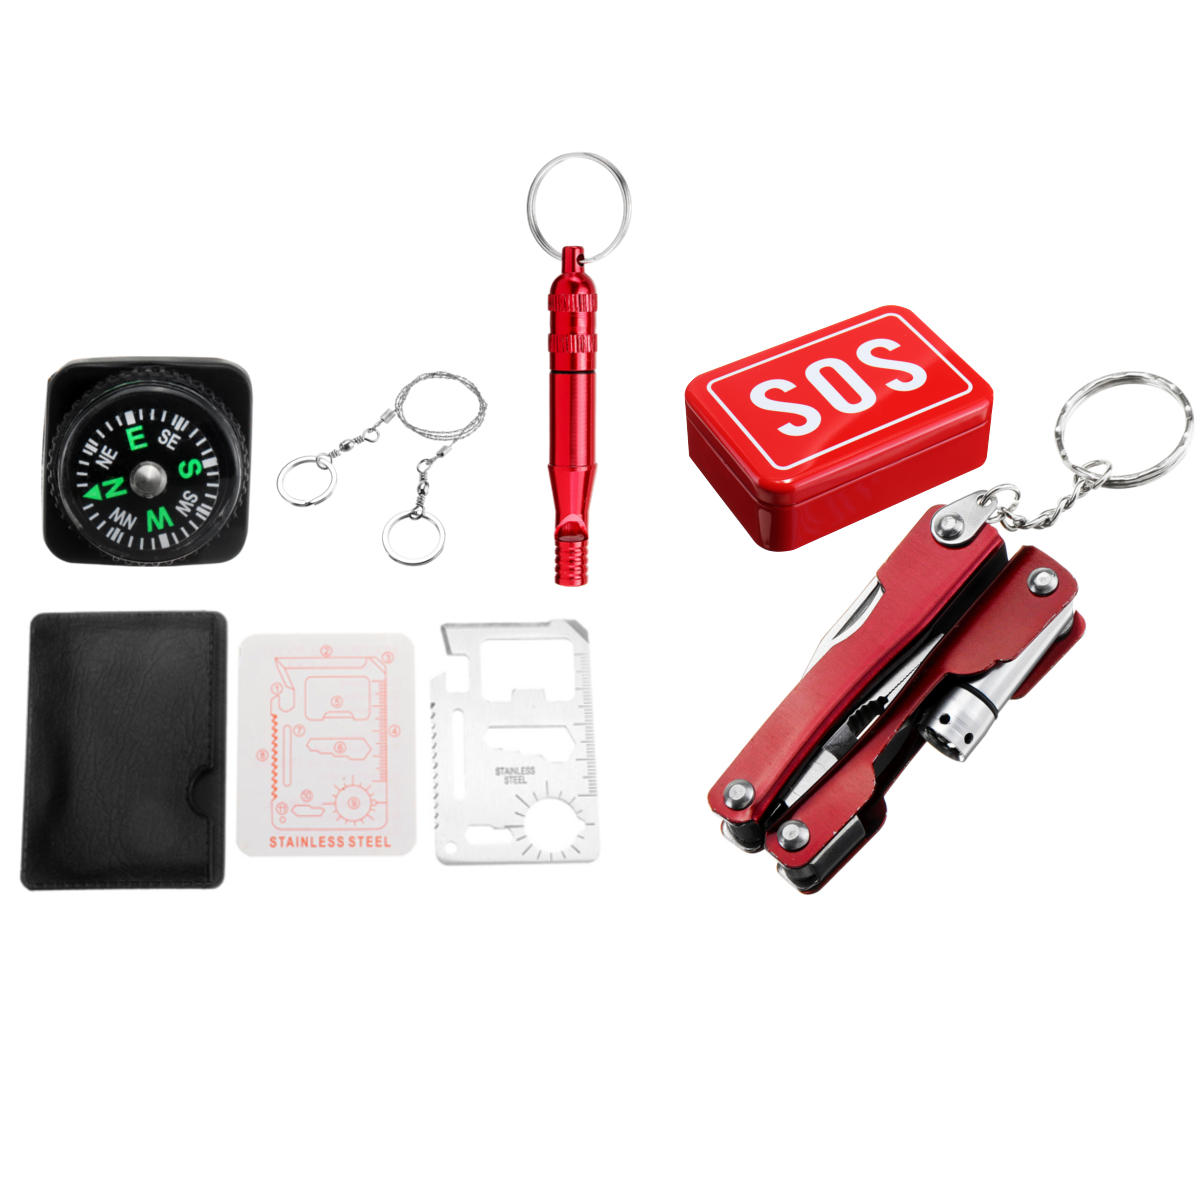 SOS ferramentas de Sobrevivência de Emergência ao ar livre Kit de Engrenagem para Home Office Car Boat Camping Caminhadas Viagens ou Aventuras 216/45/39 / 6PCS